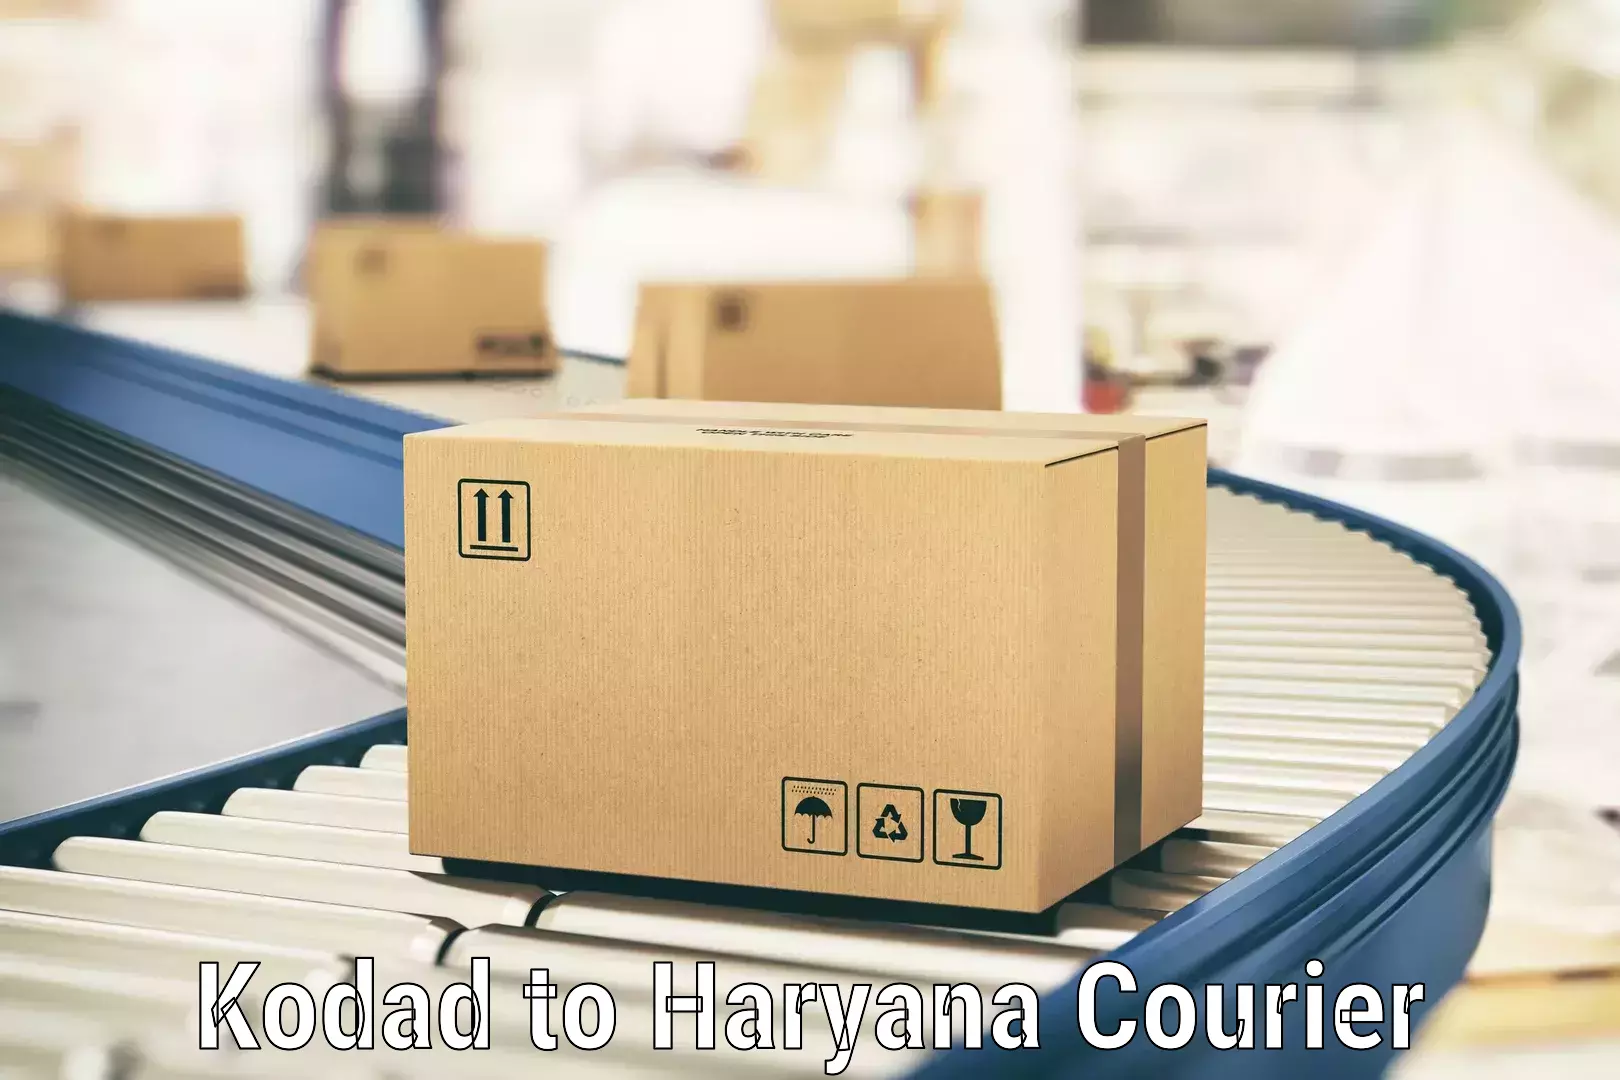 Ground shipping Kodad to Haryana